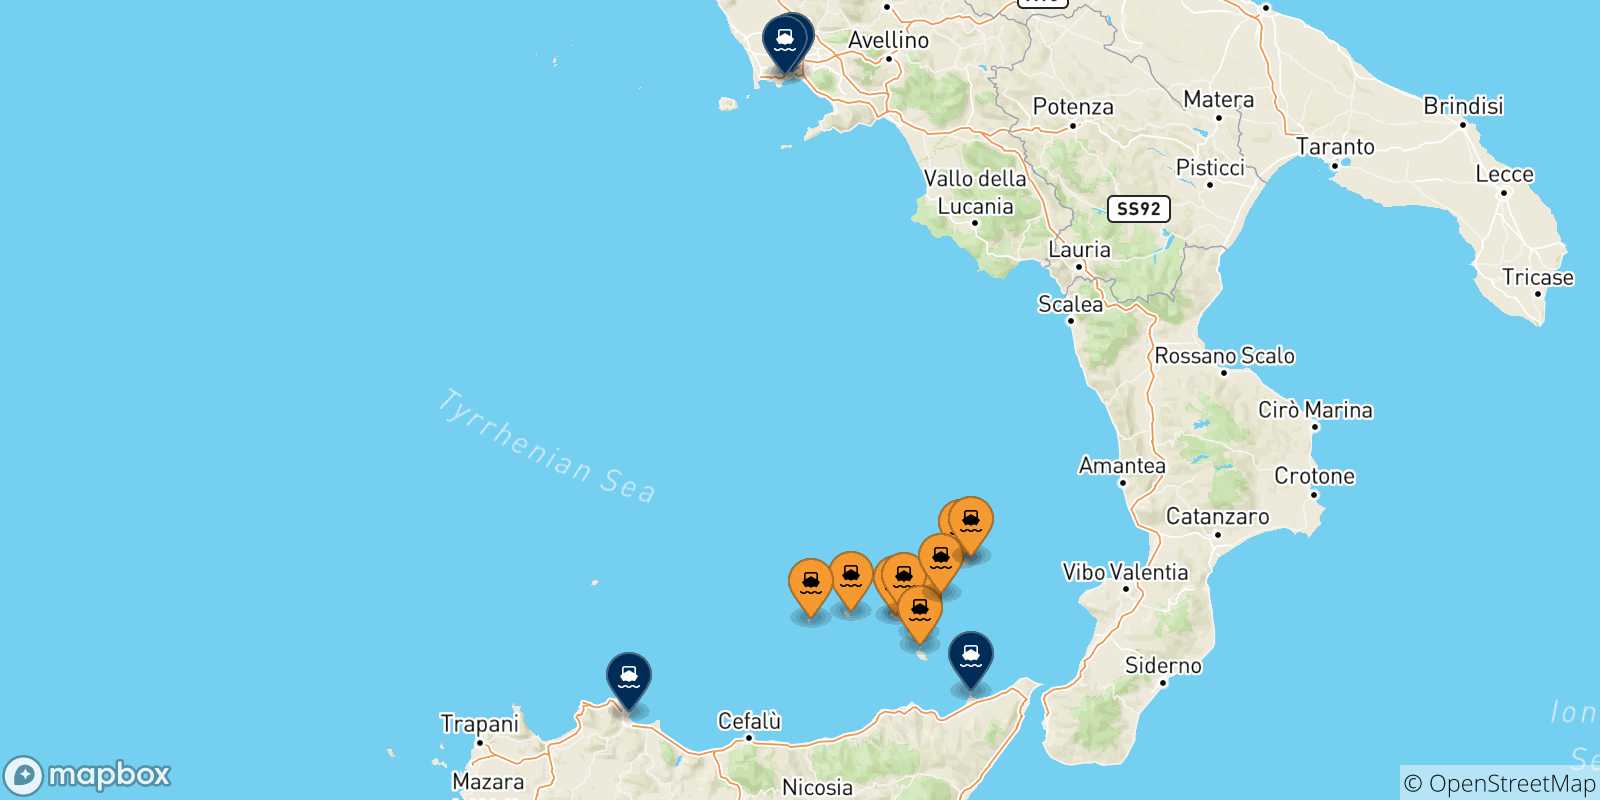 Mappa delle possibili rotte tra le Isole Eolie e l'Italia